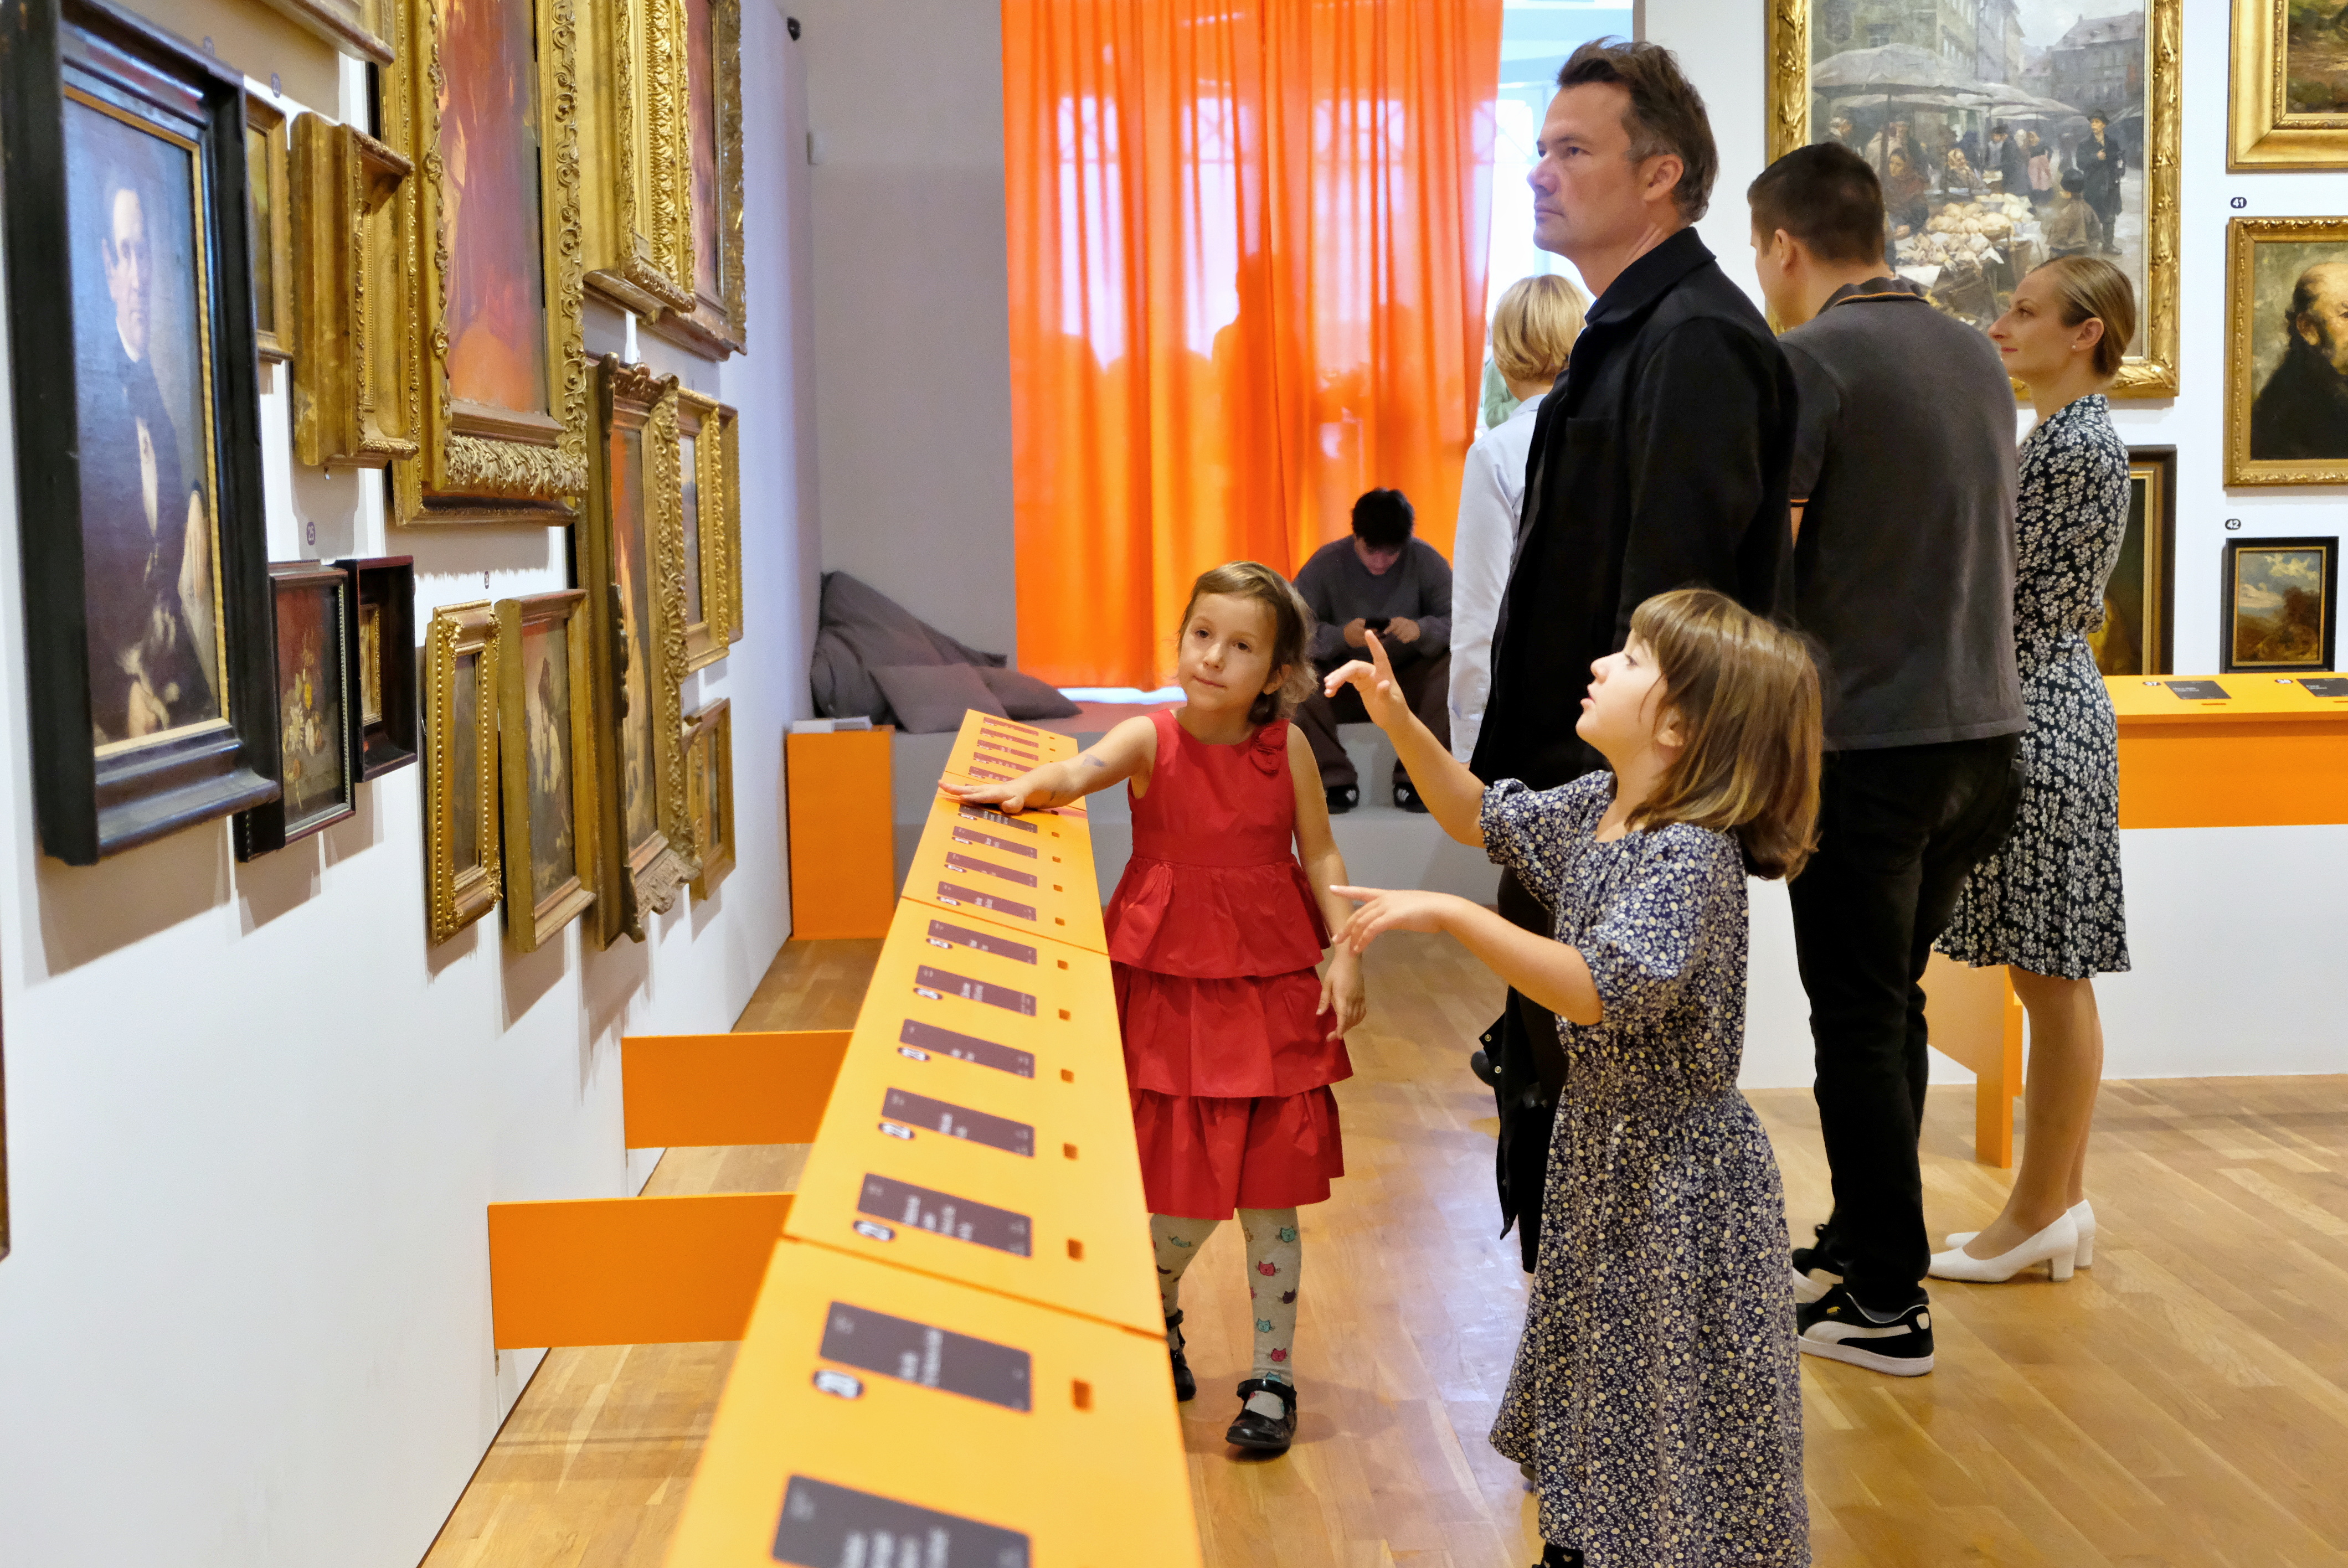 Galerie moderního umění slaví 70 let. V rámci oslav otevřela výstavu, kde návštěvníci hlasují o nejlepším uměleckém díle